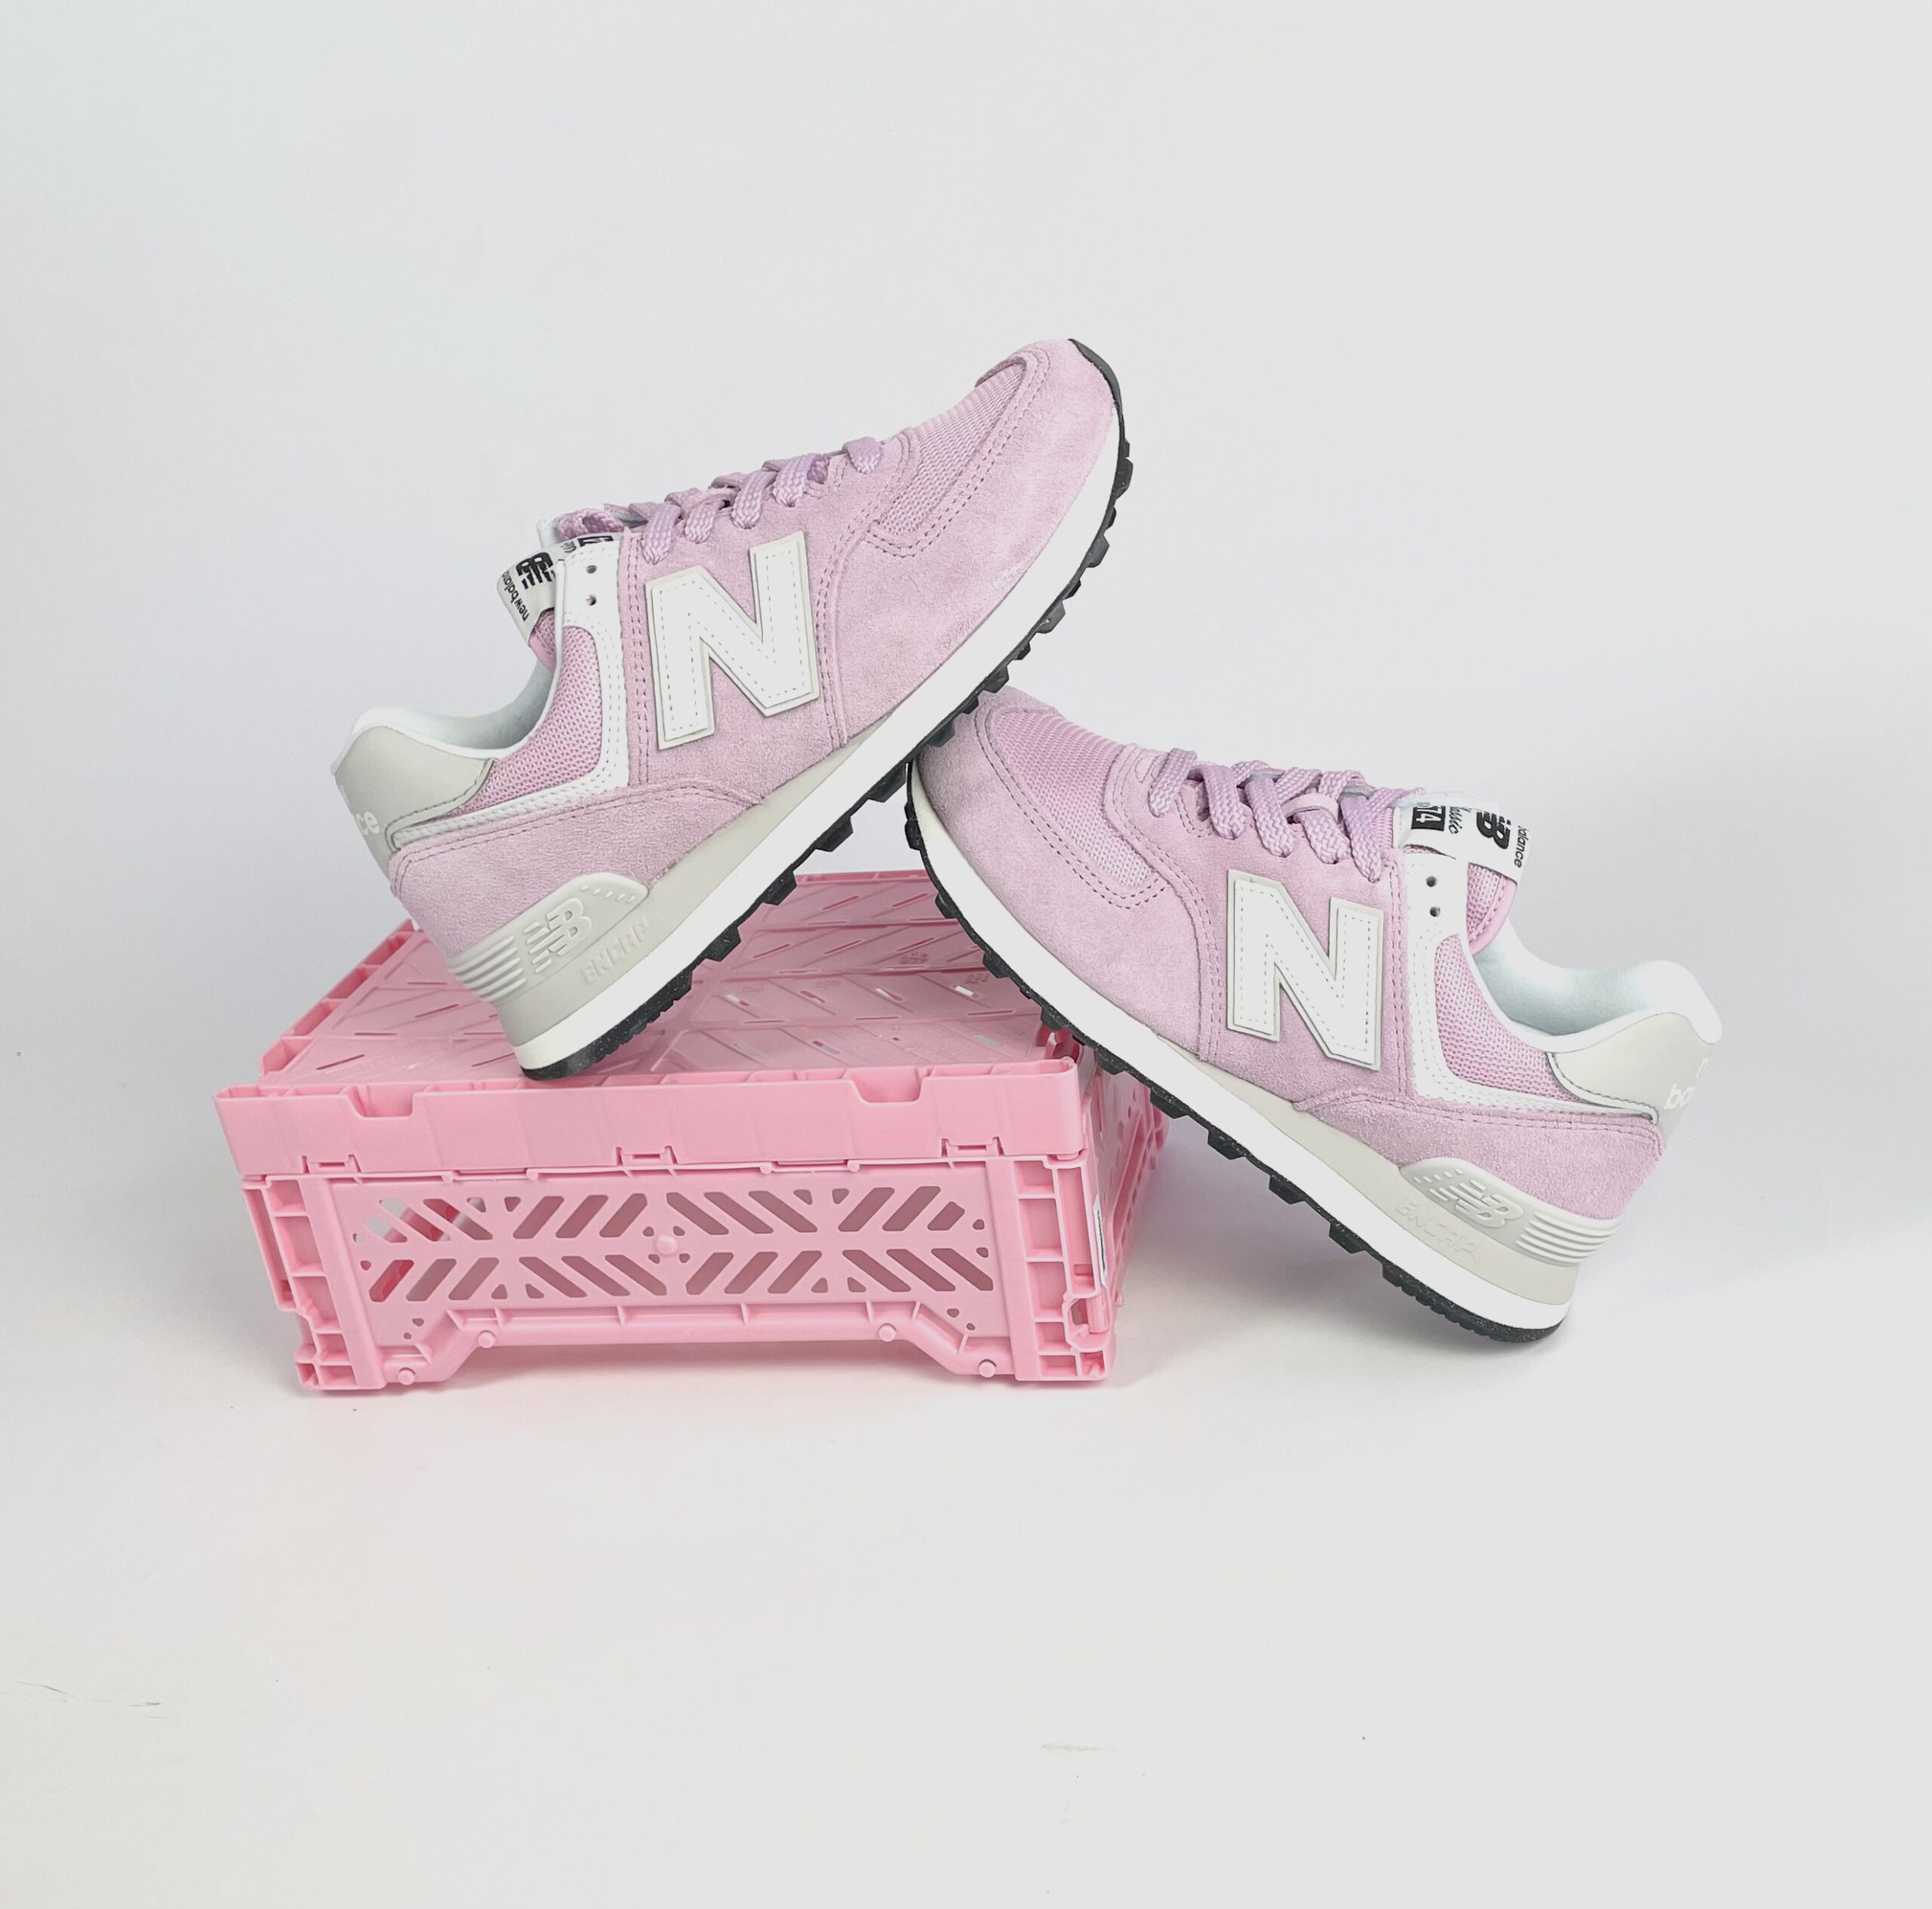 Verspreiding ik ben gelukkig landen New Balance 574 PK2 Damen Sneaker (pink) - meinsportline.de